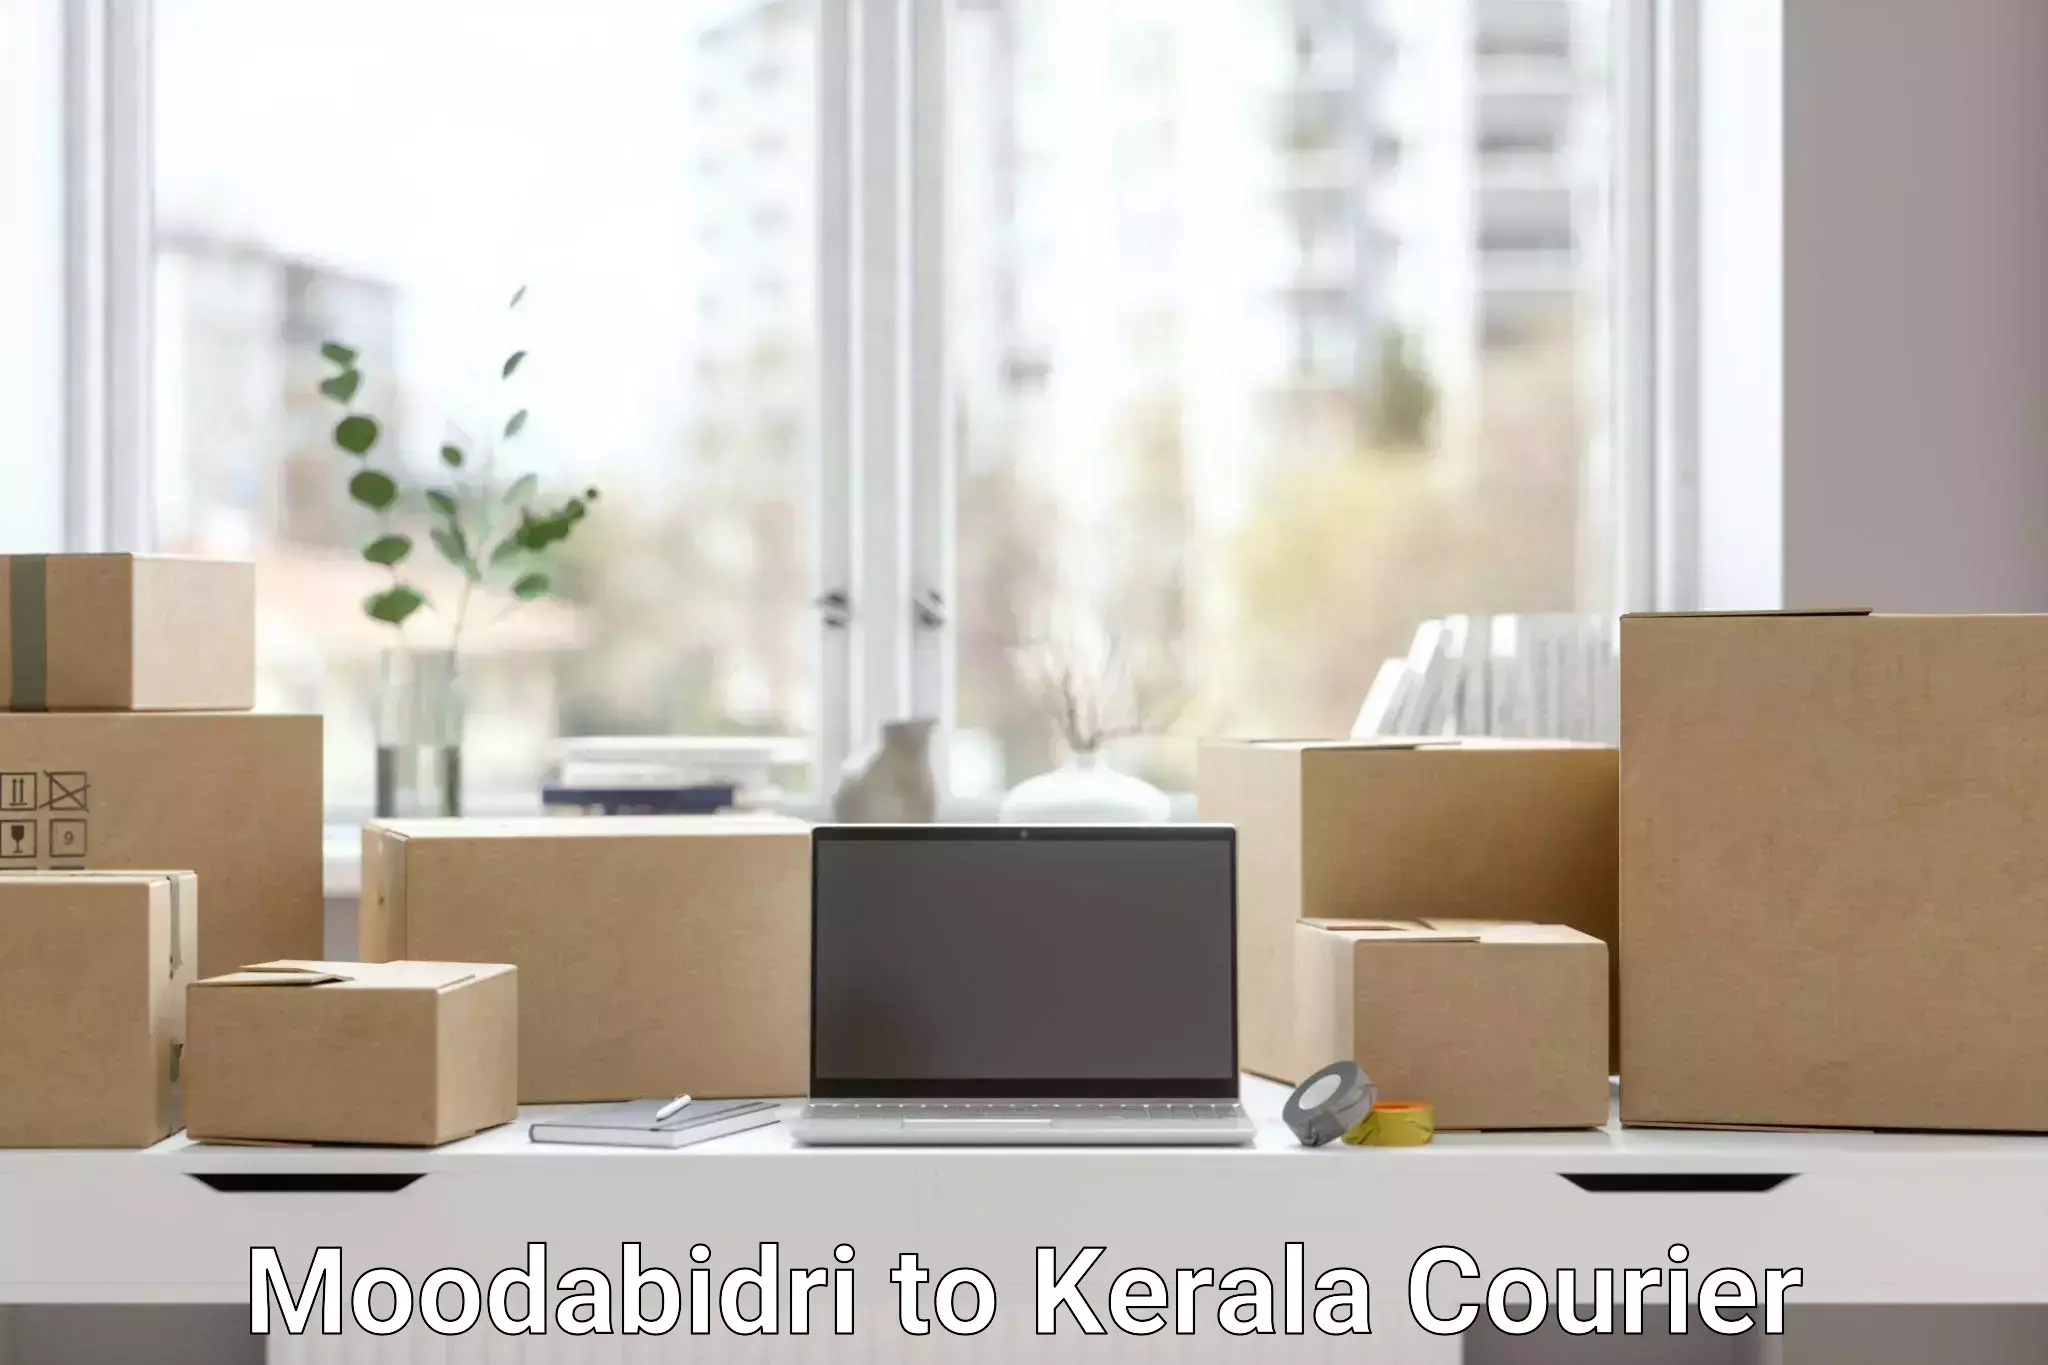 Speedy delivery service Moodabidri to Kerala